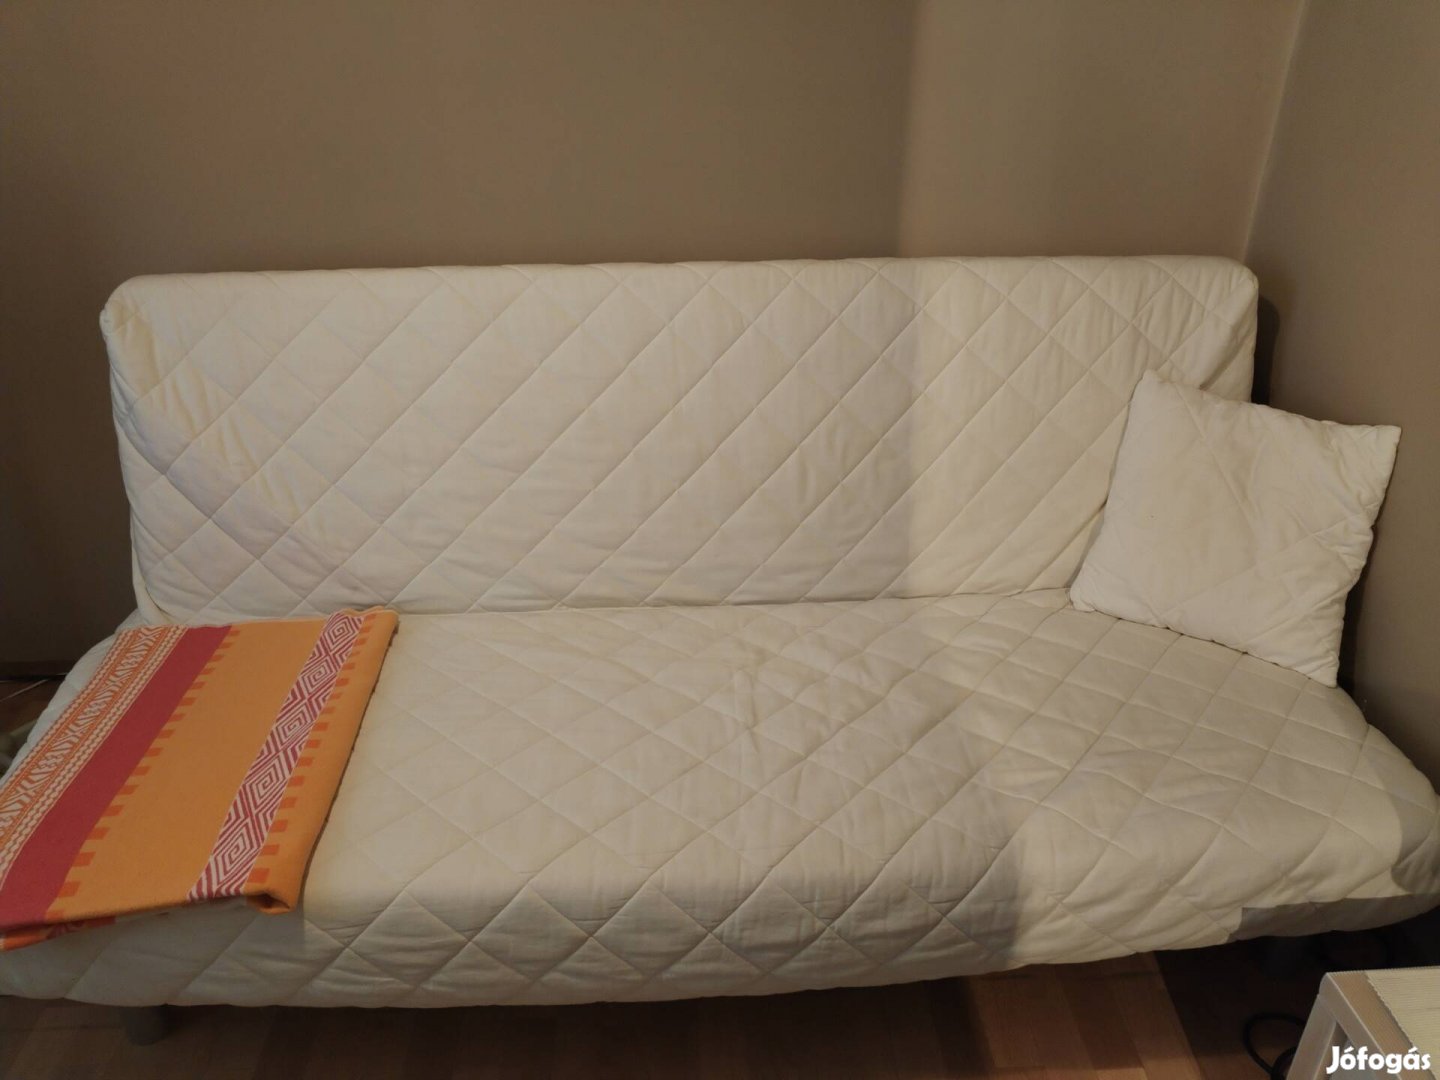 IKEA Bedding Kanape